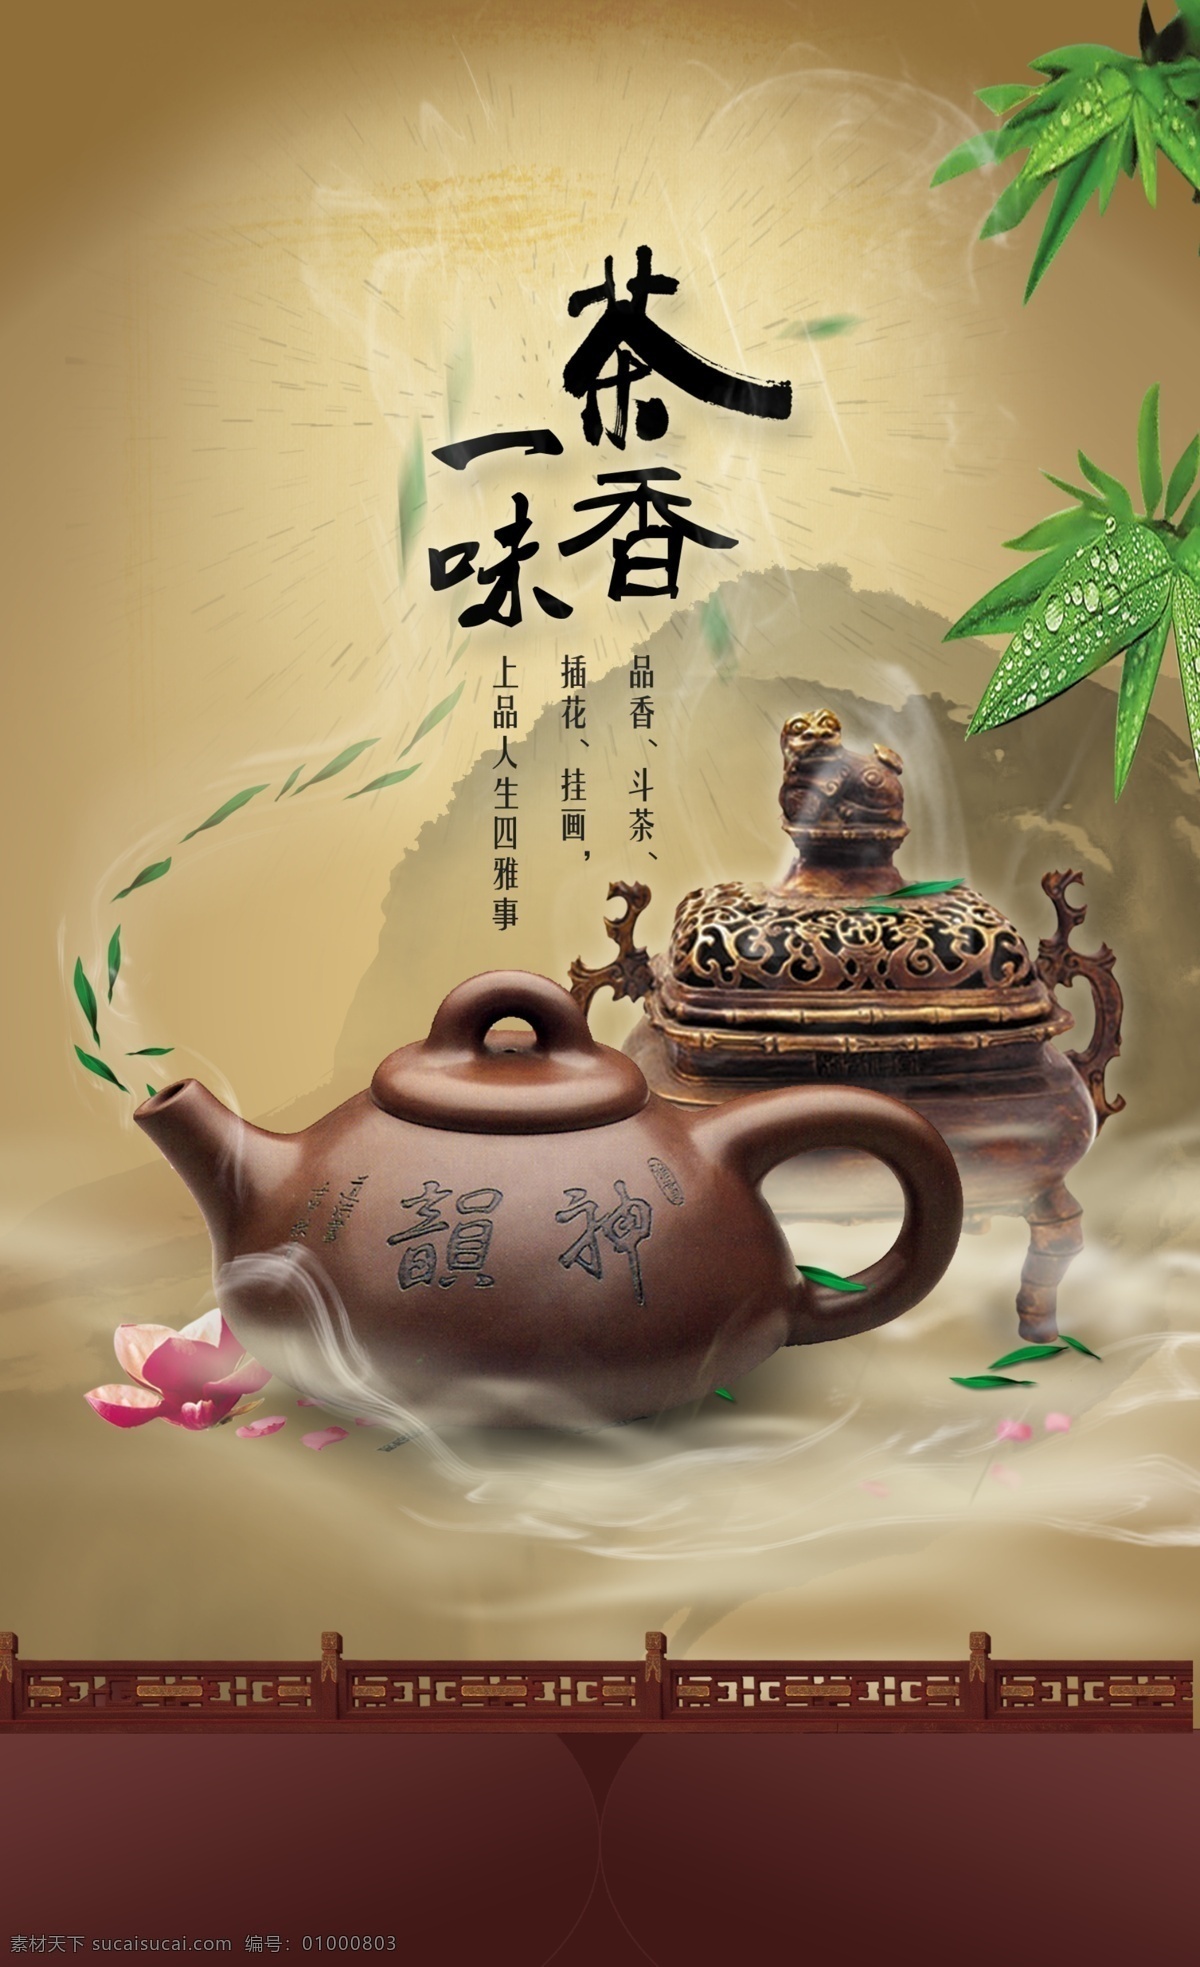 分层 psd格式 茶壶 茶叶 茶叶海报 茶叶模板下载 茶叶素材下载 水墨 香炉 中国风 竹叶 源文件 其他海报设计